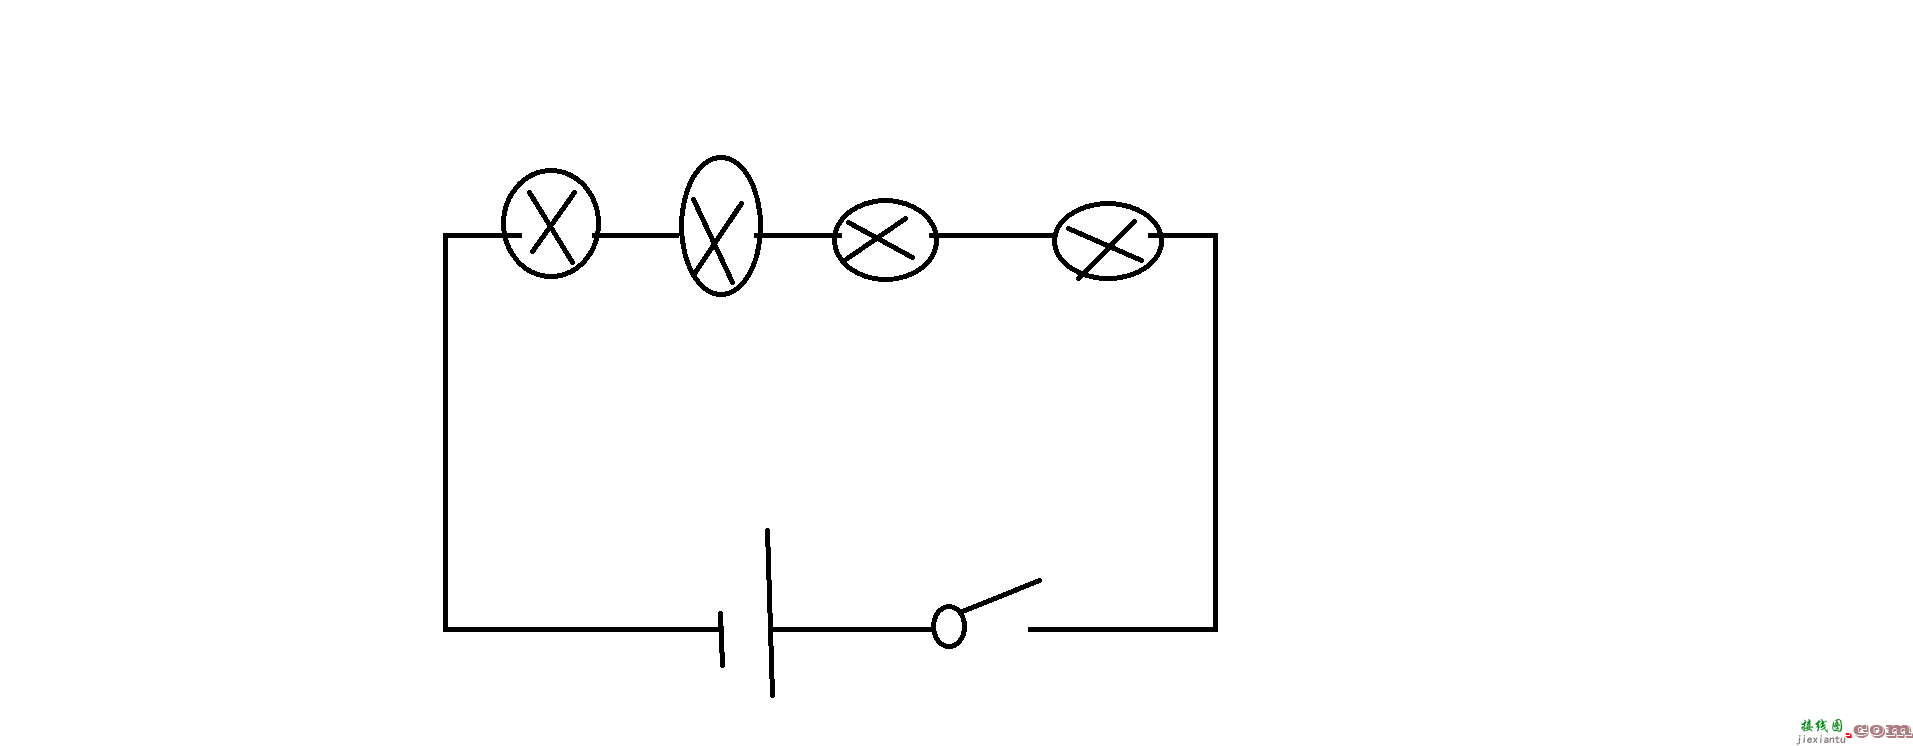 灯泡并联电路及接线图-两个灯泡串联的实物图 第5张